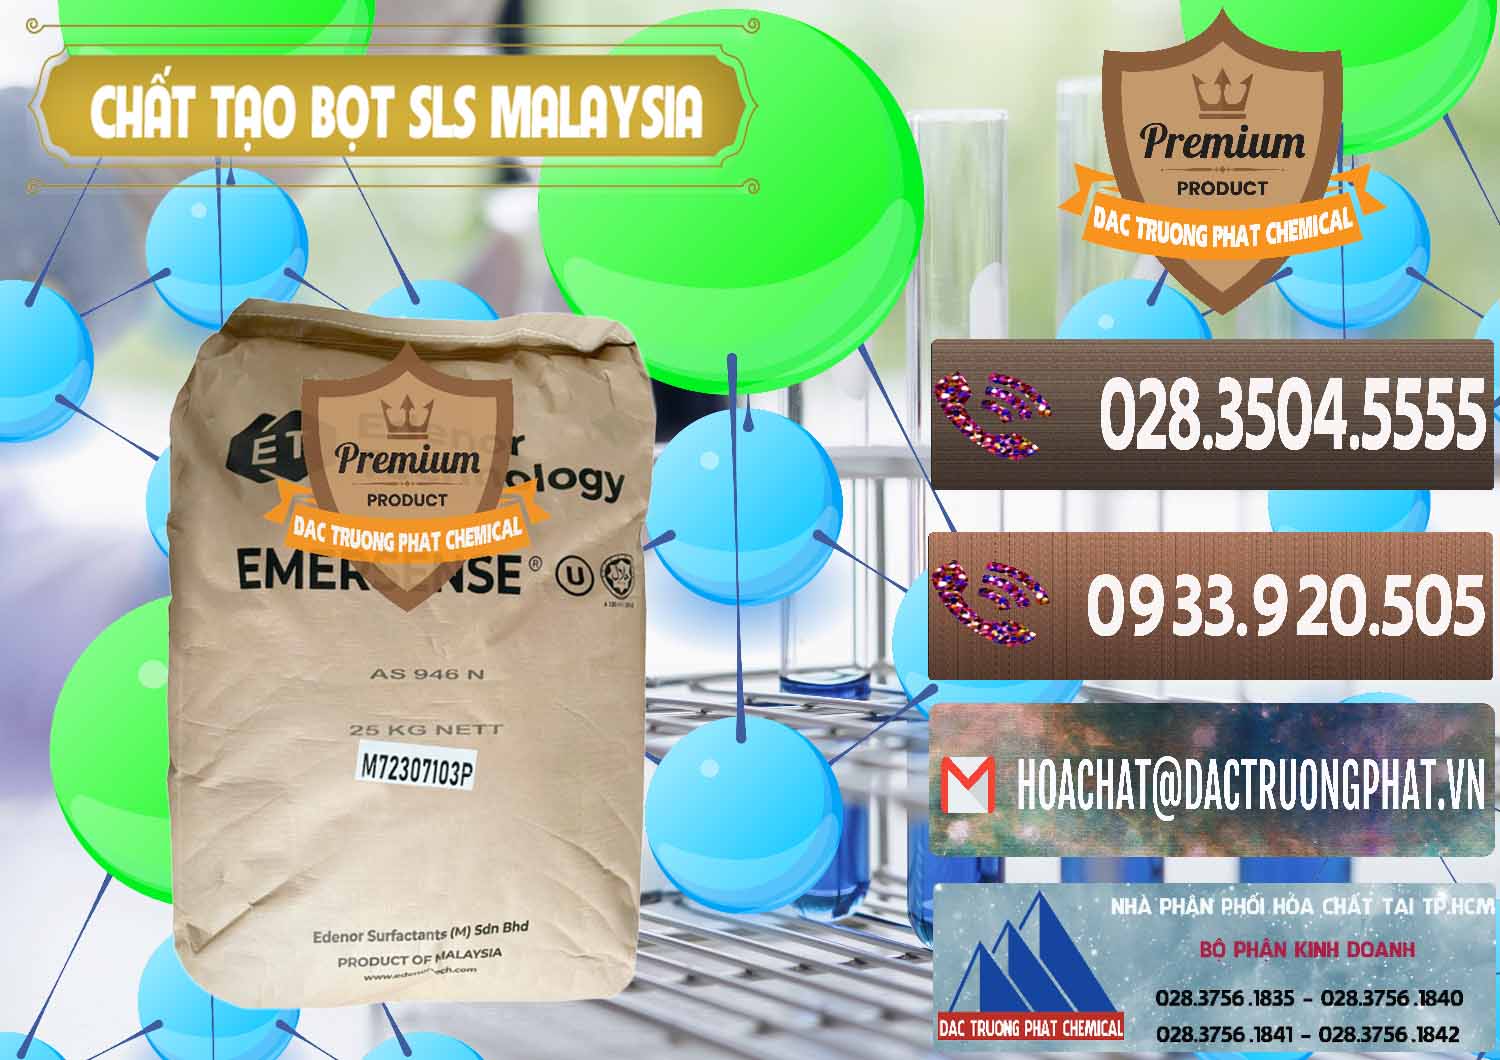 Cty chuyên cung ứng và bán Chất Tạo Bọt SLS Emersense Mã Lai Malaysia - 0381 - Công ty chuyên phân phối và bán hóa chất tại TP.HCM - hoachatviet.net